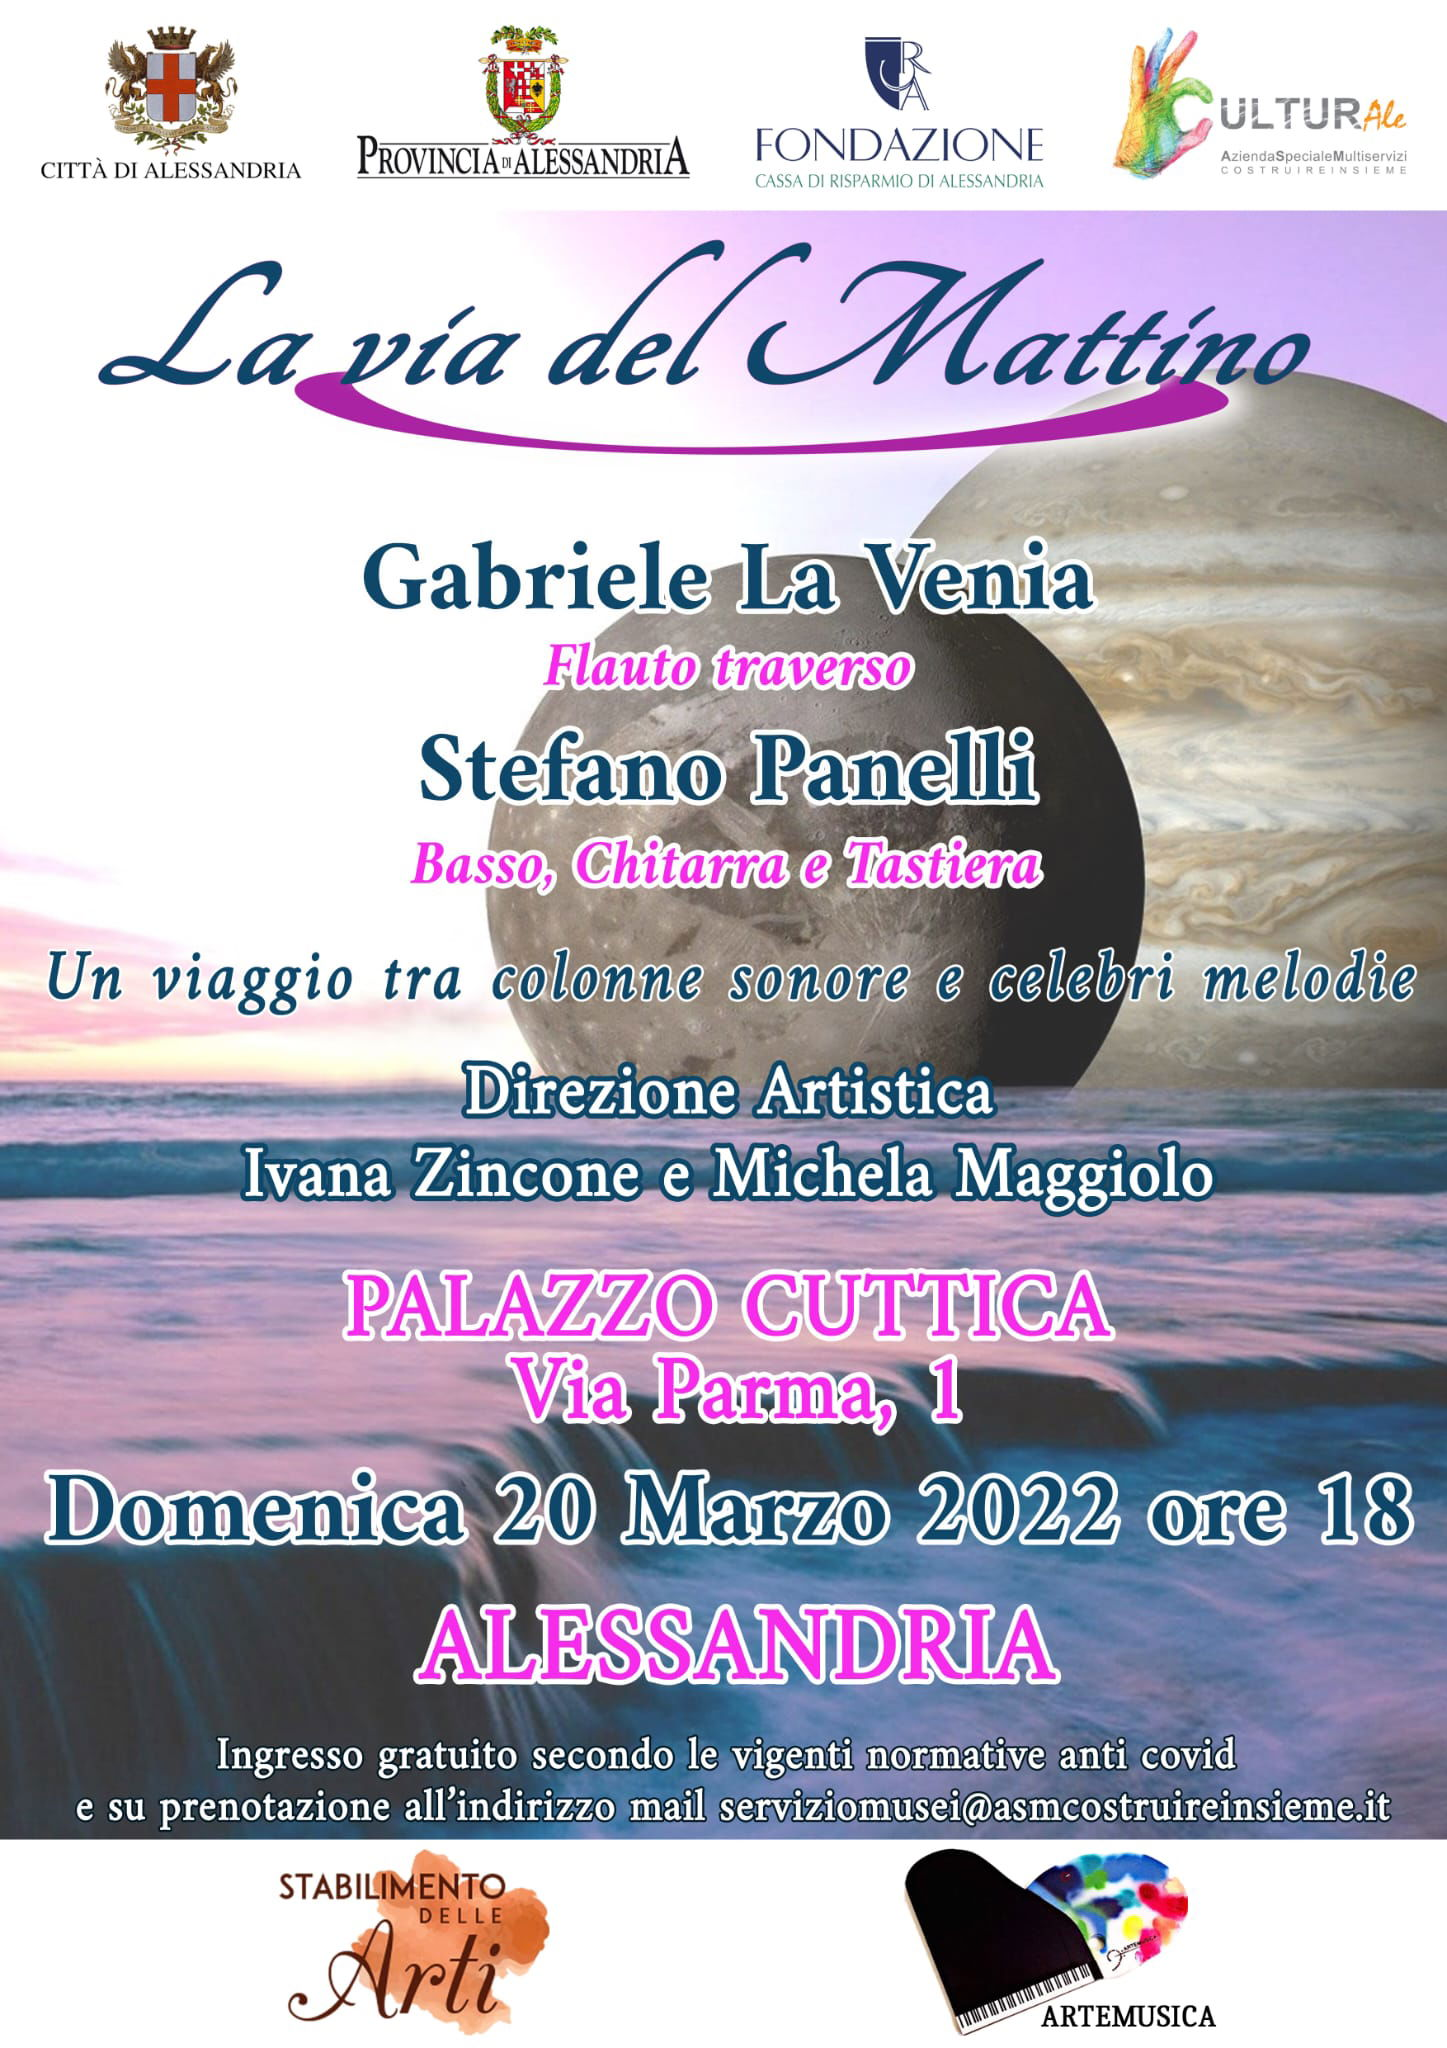 Il 20 marzo a Palazzo Cuttica il concerto “La via del mattino”